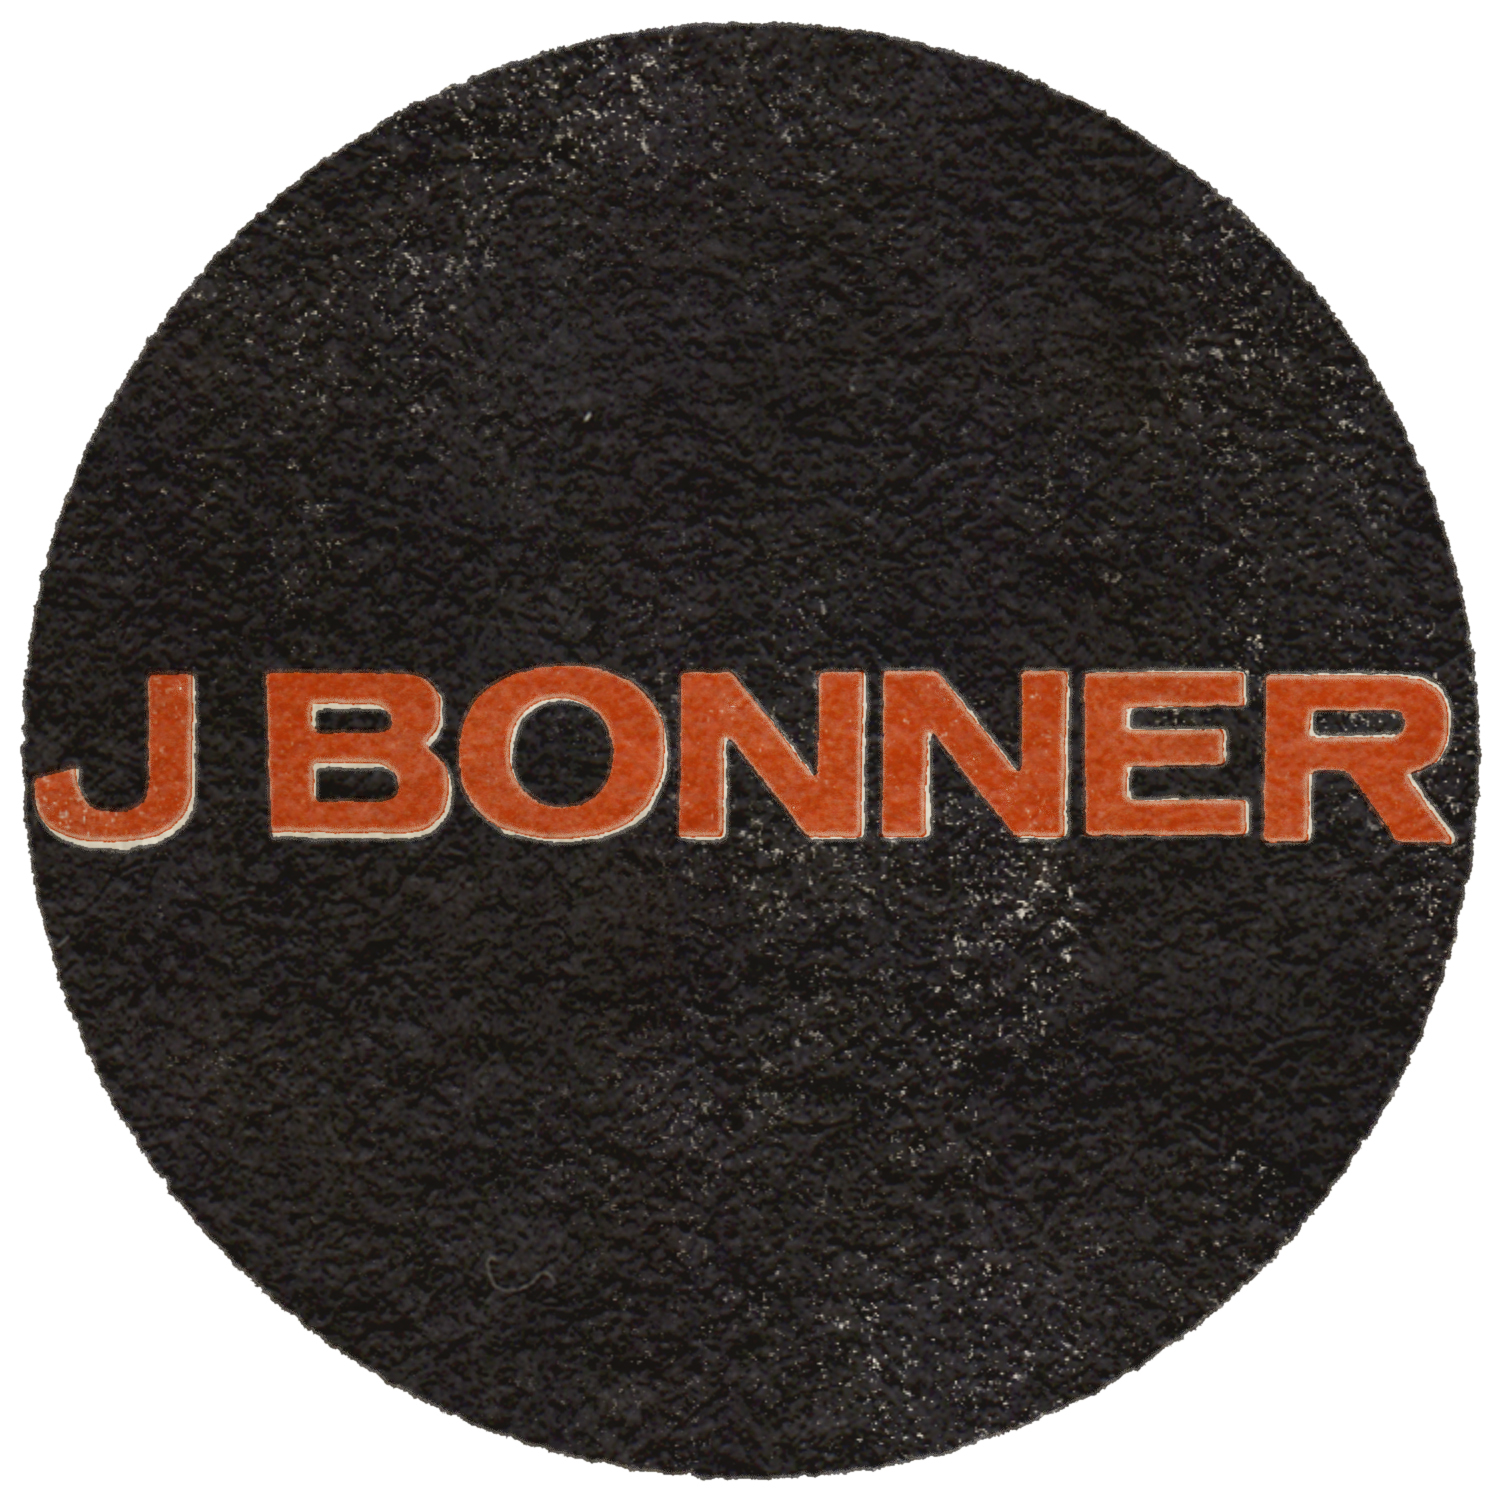 J Bonner Co